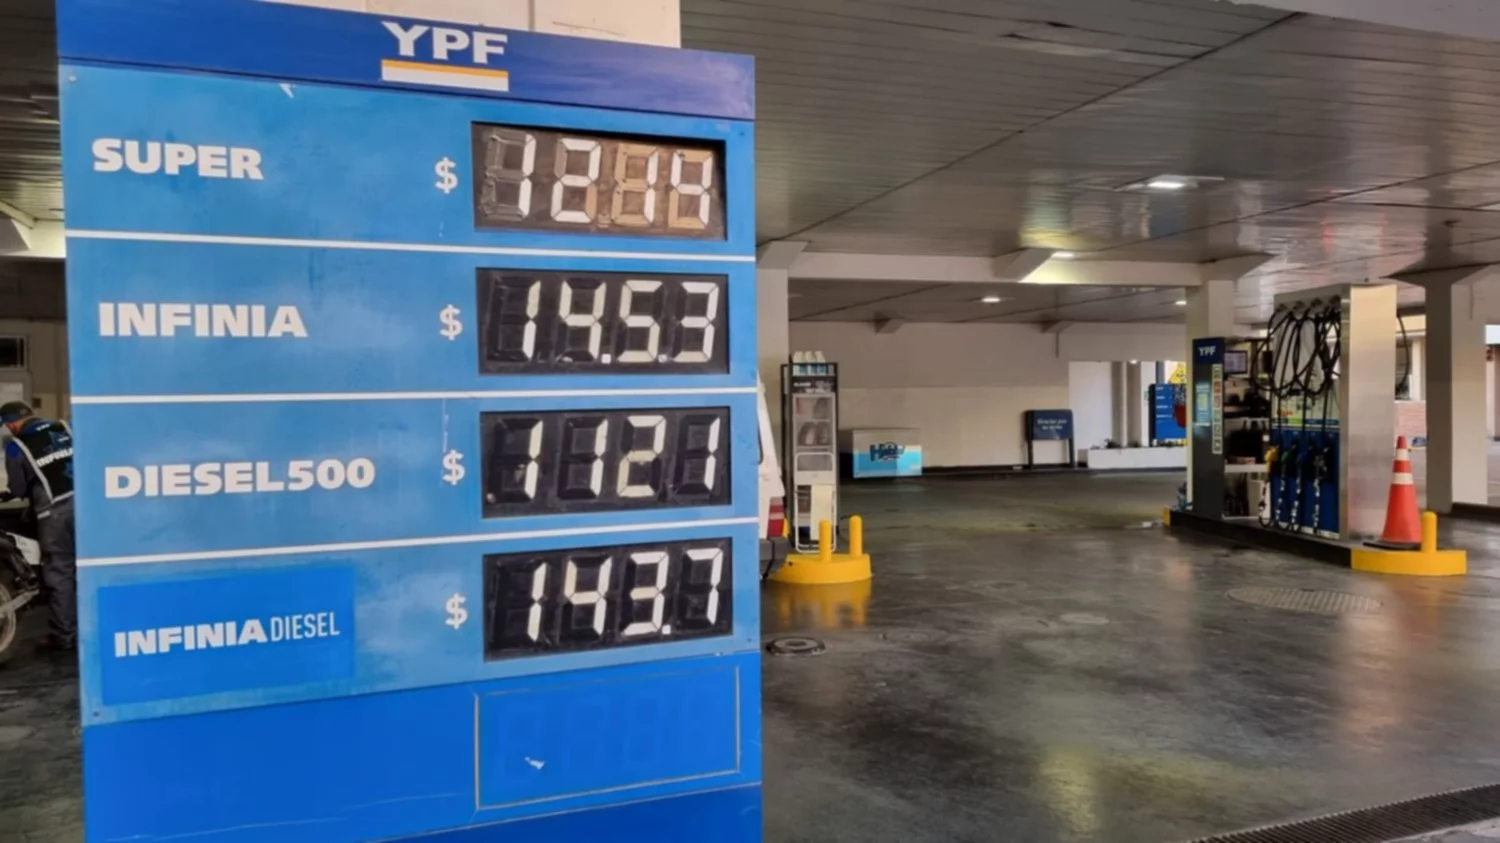 Así quedaron los precios de los combustibles en Bahía tras el último aumento de YPF